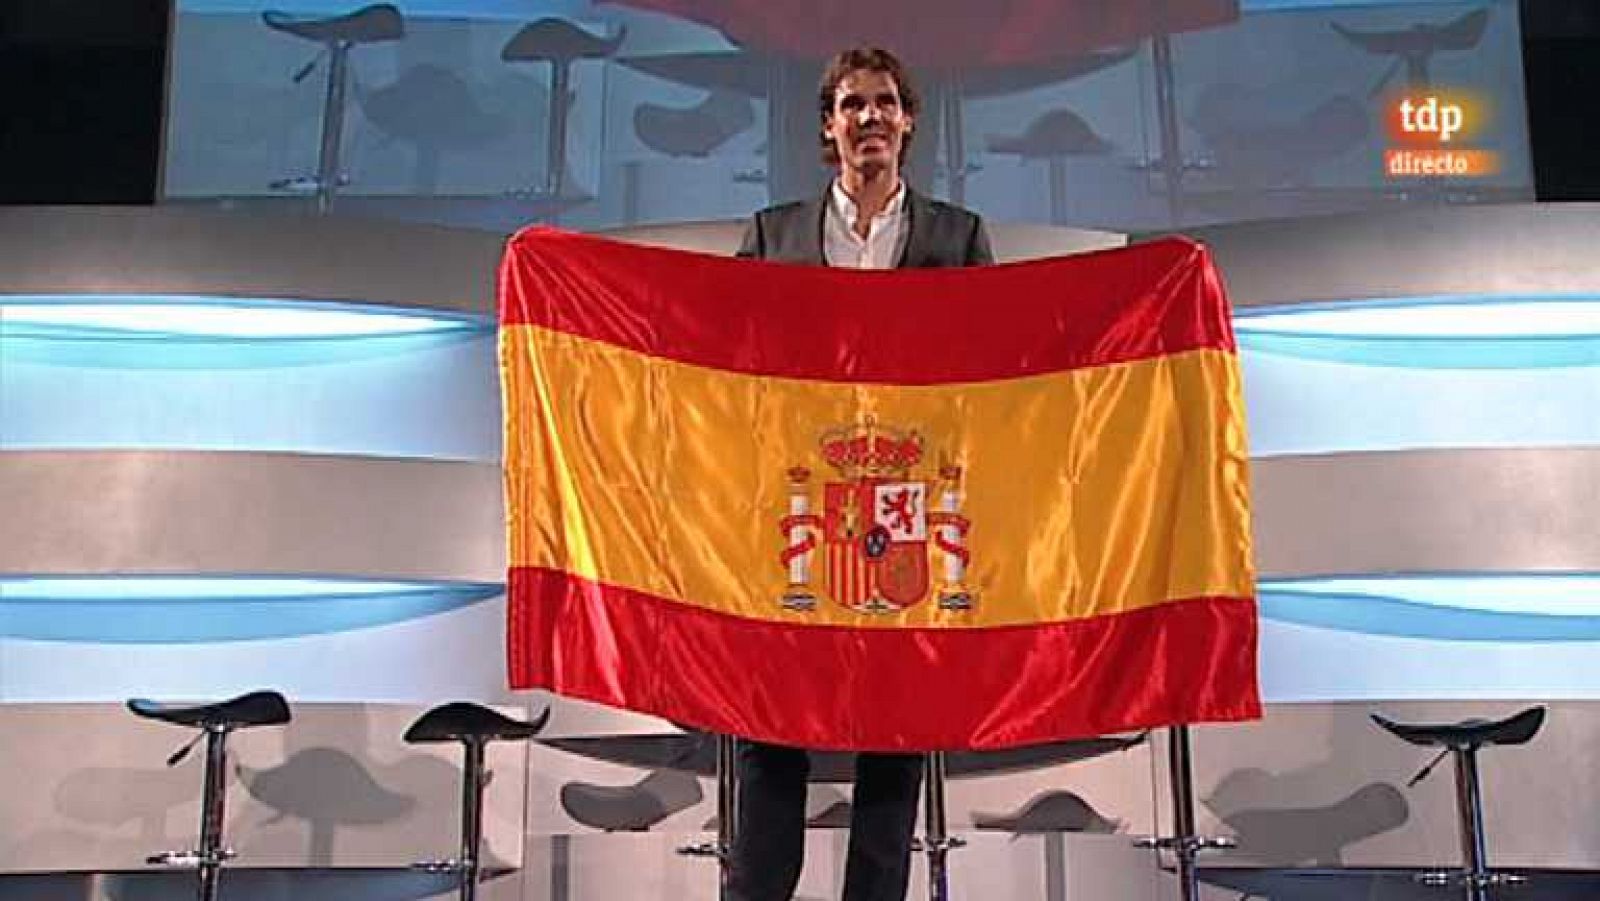 Londres 2012 - Presentación de Rafa Nadal como abanderado del equipo olímpico español